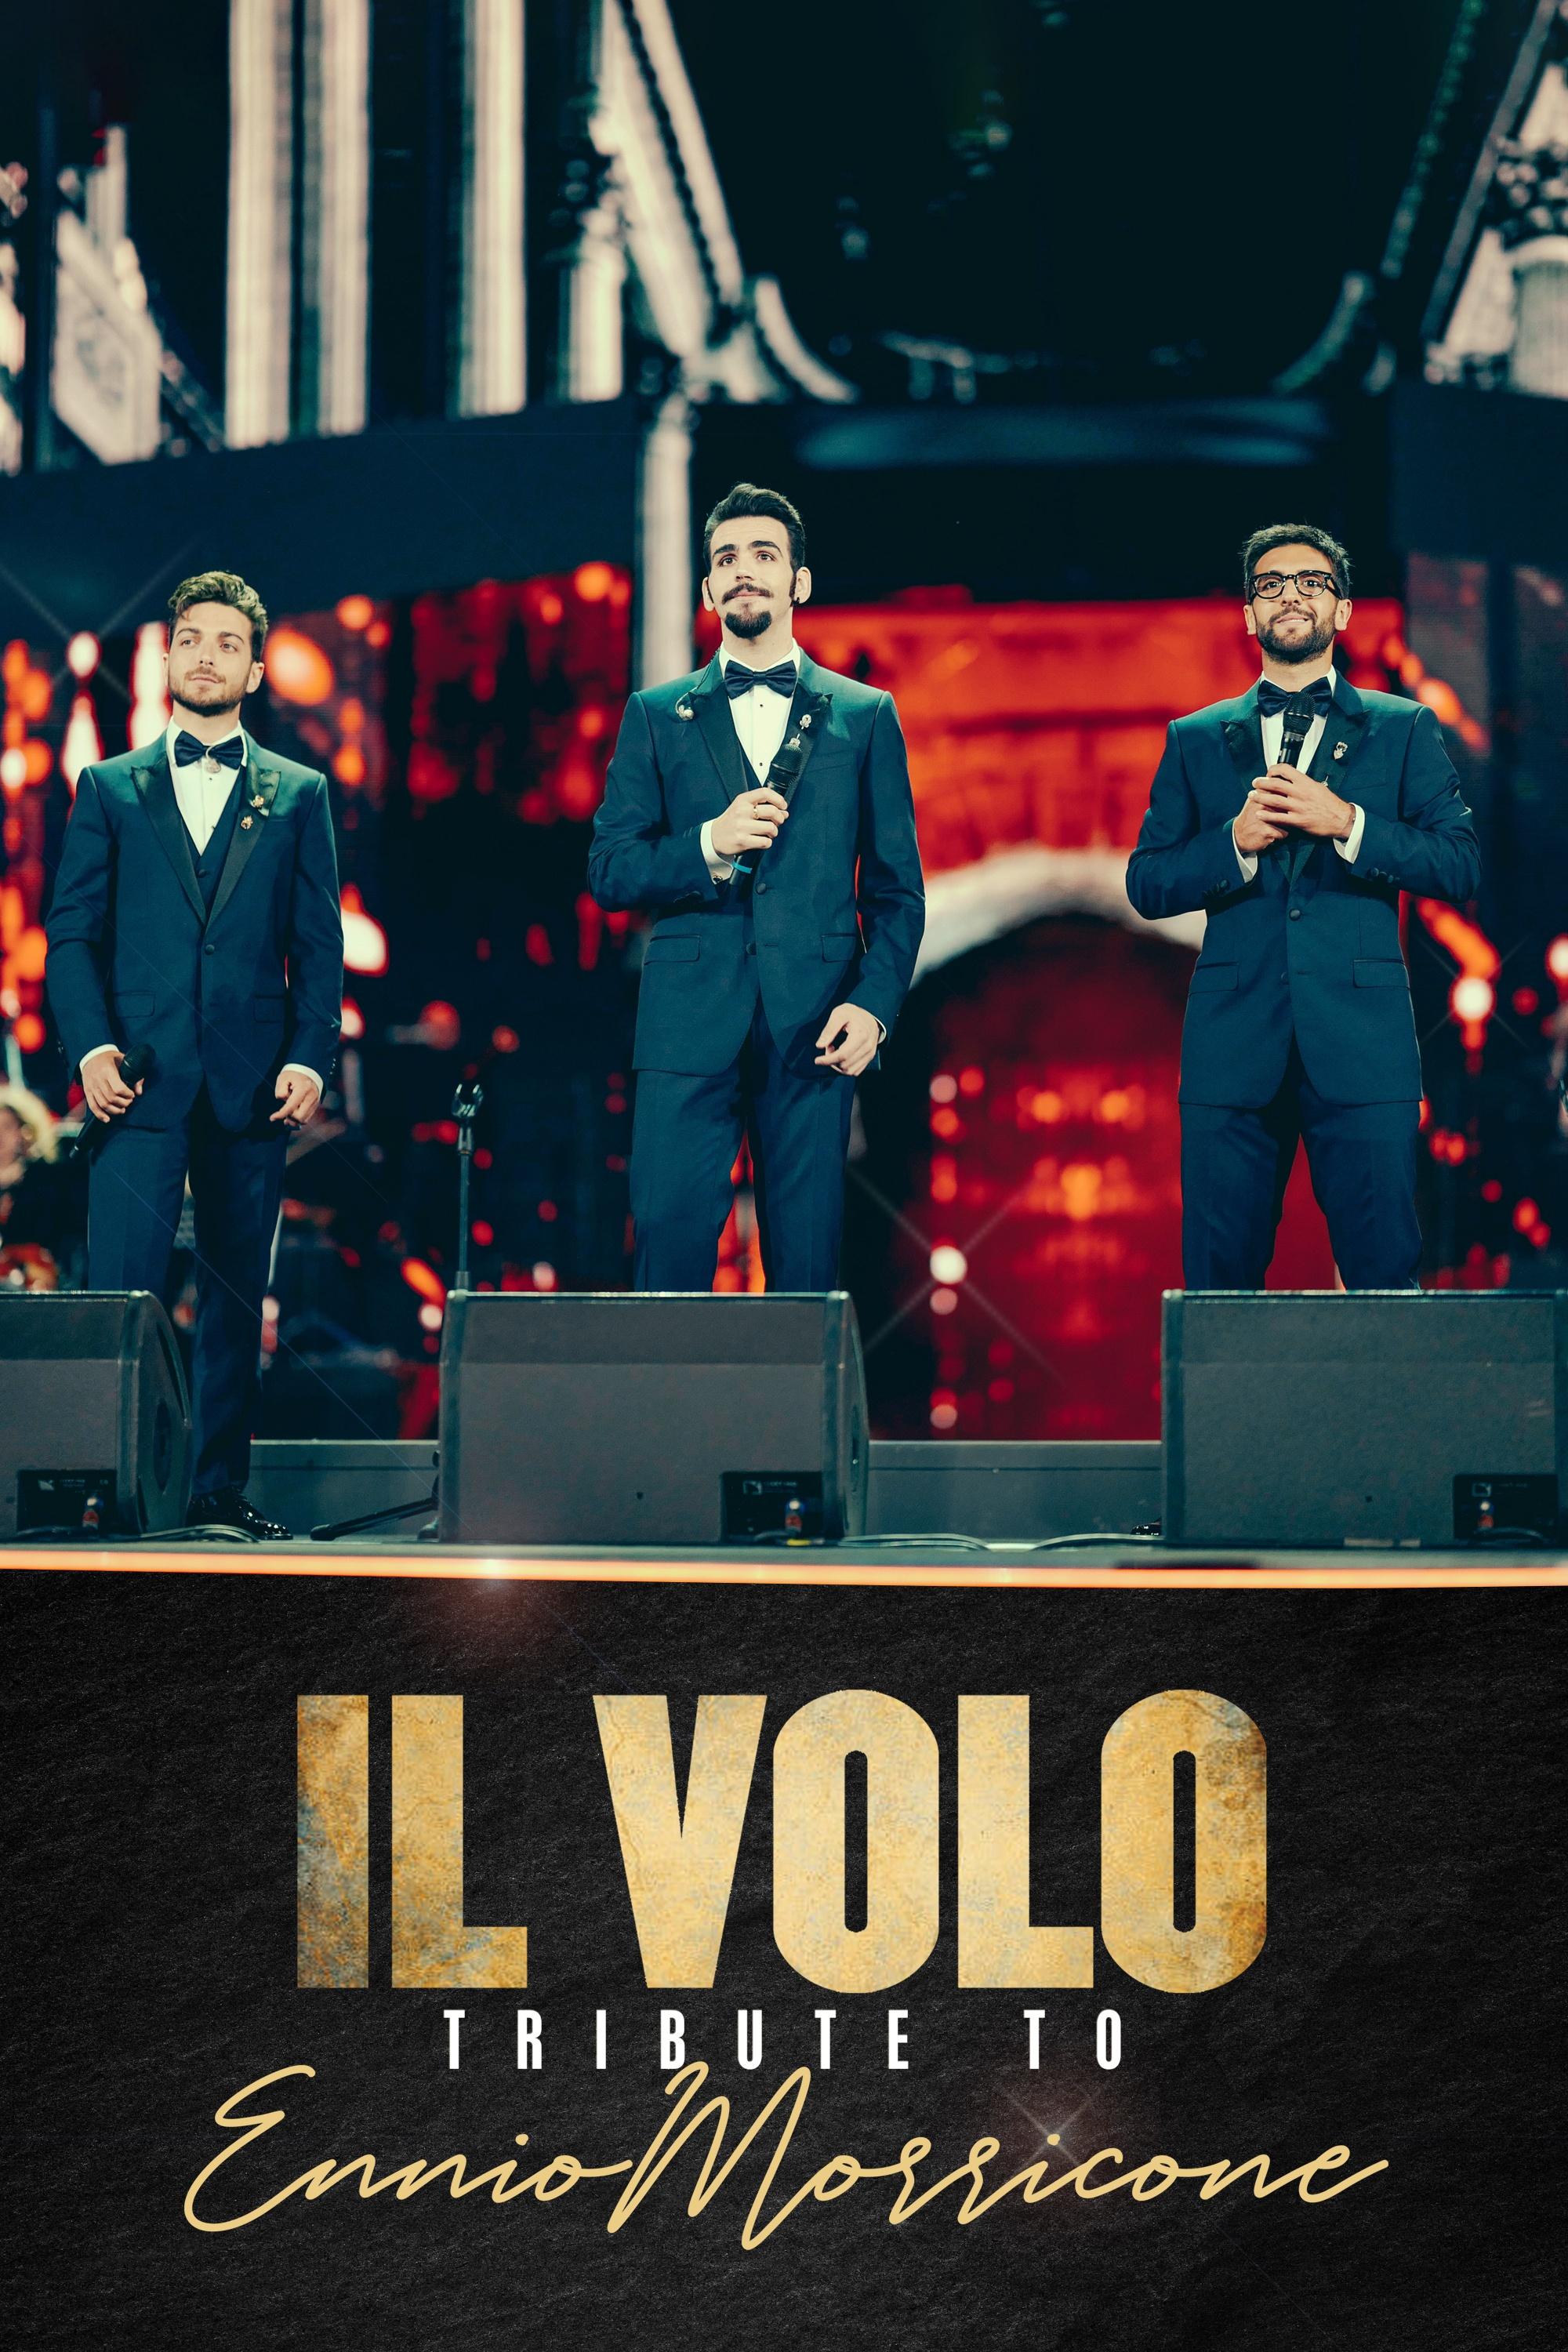 Il Volo sings Ennio Morricone: interview with the Italian trio